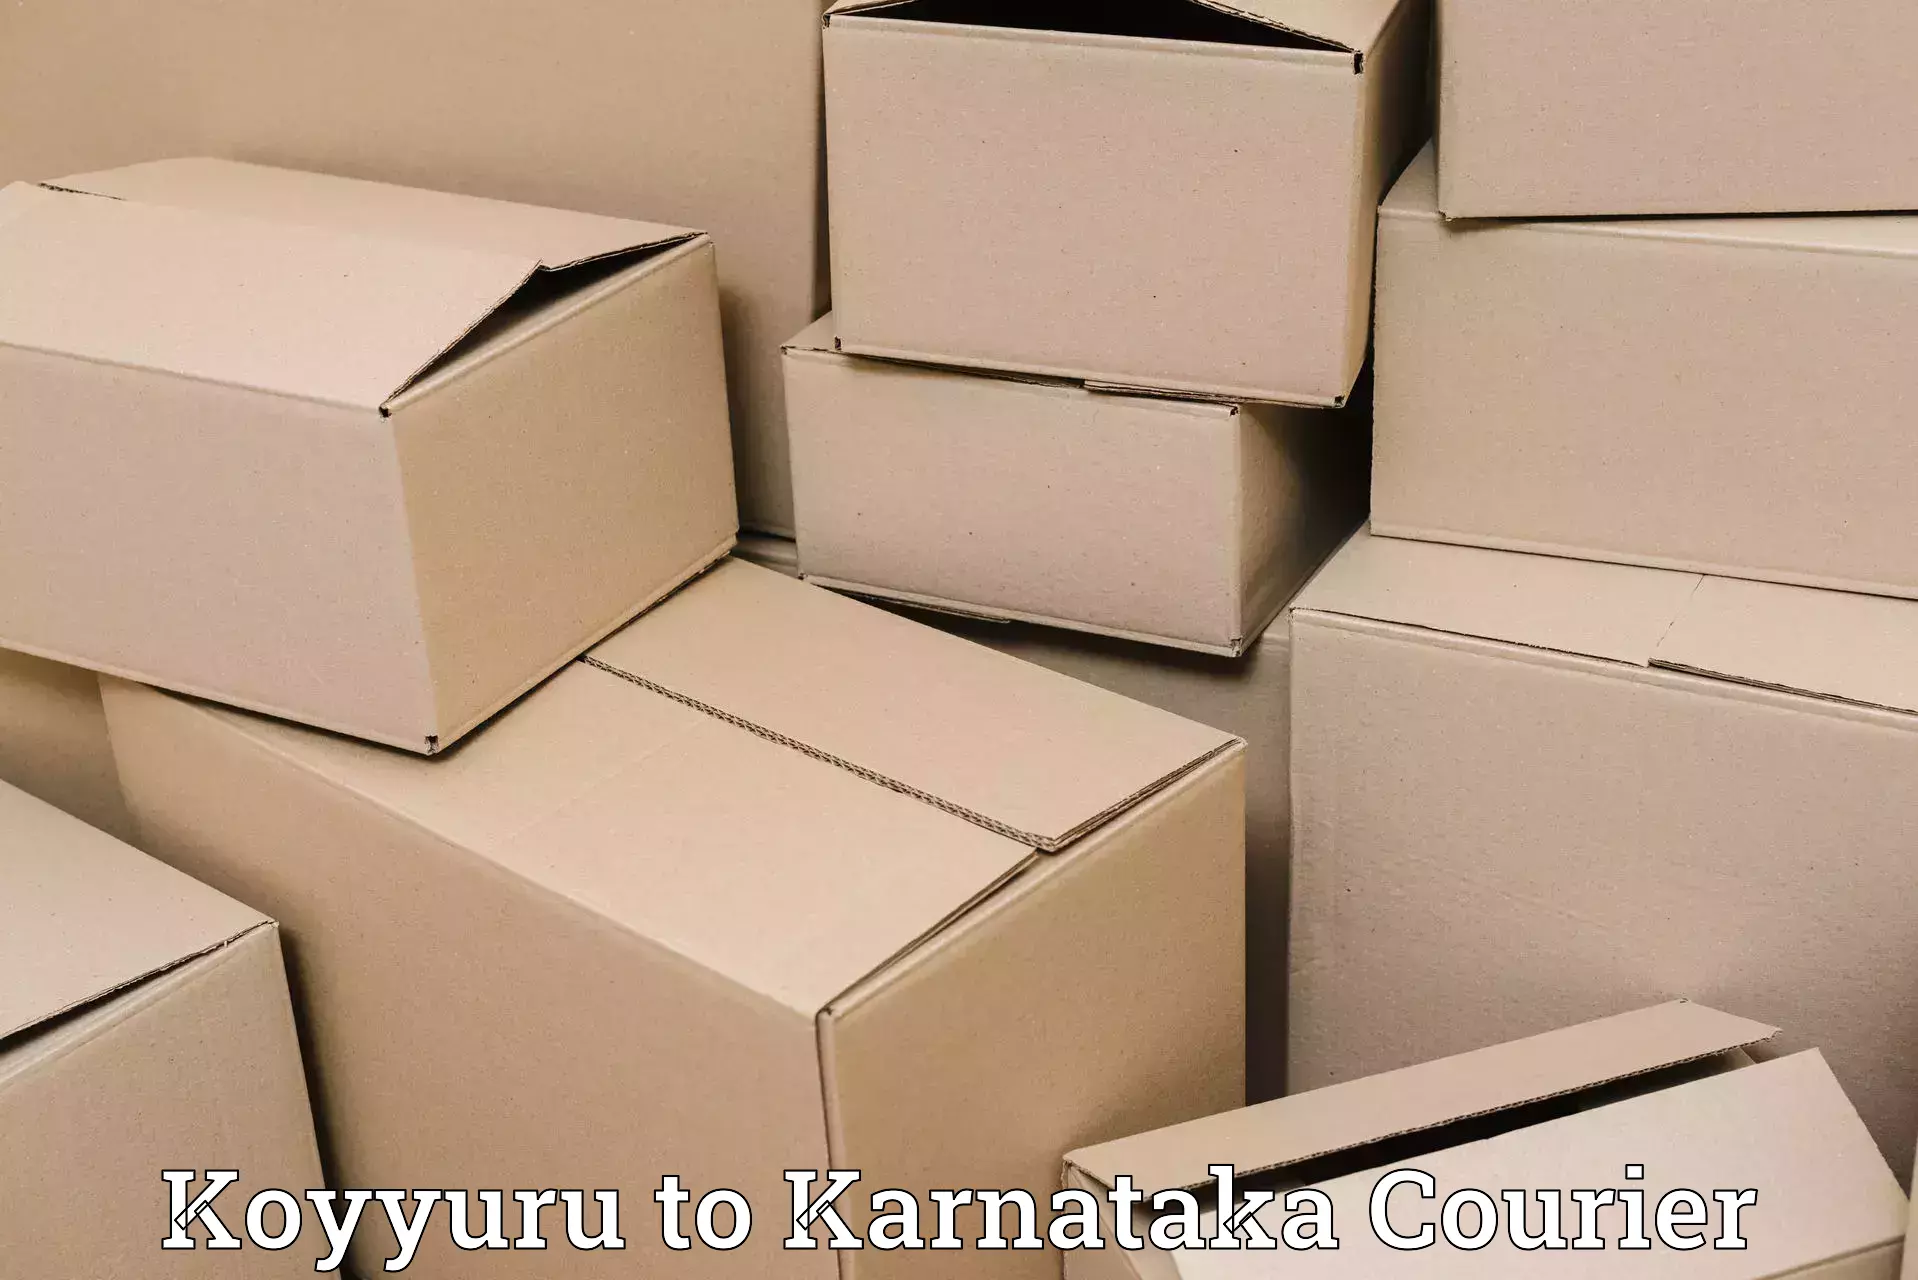 Rural area delivery Koyyuru to Kanjarakatte